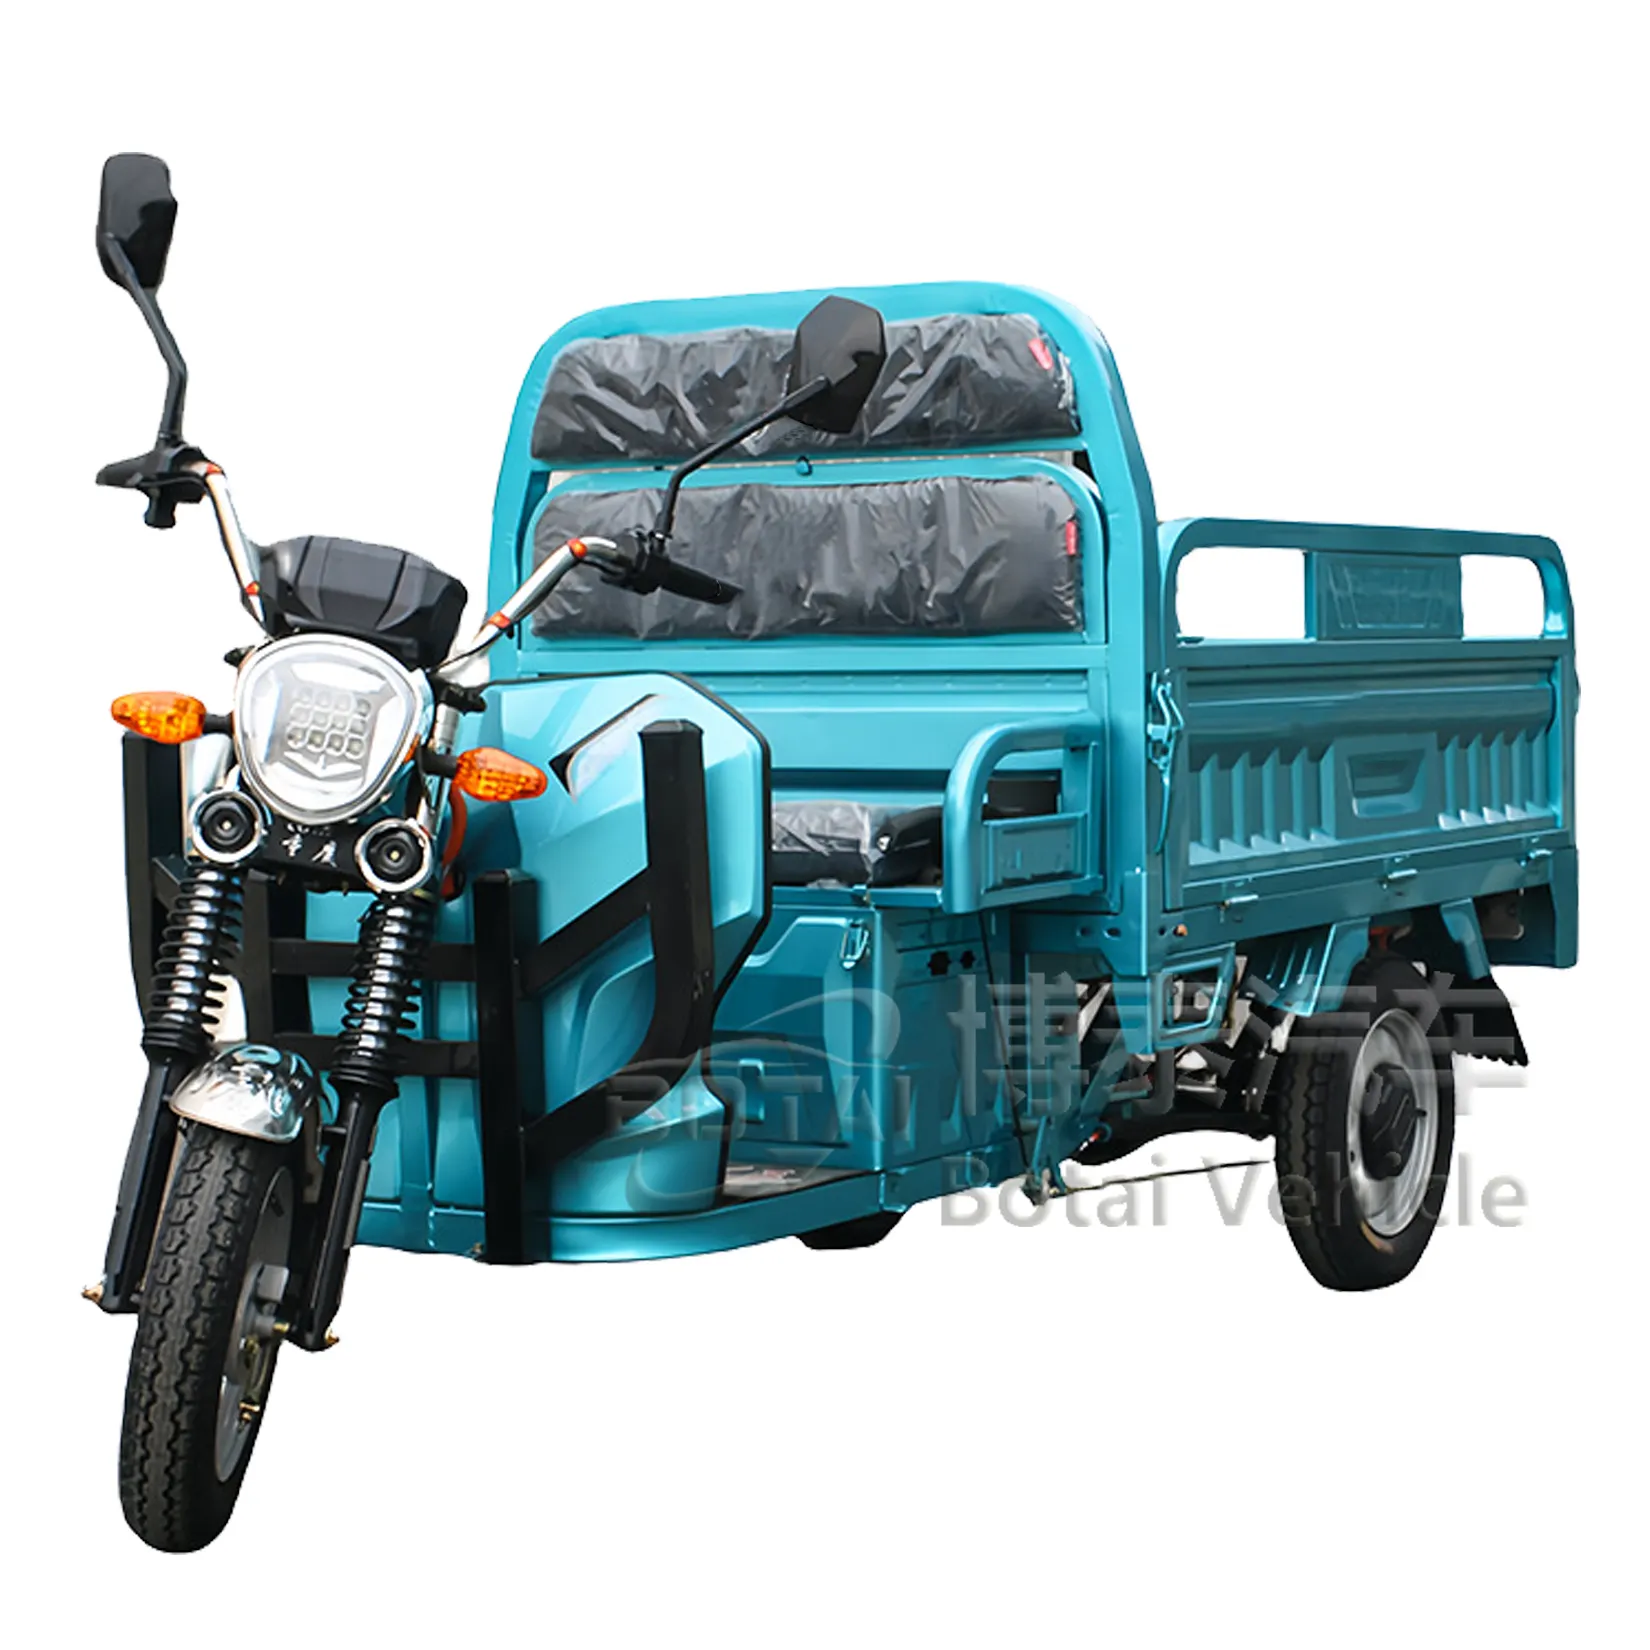 Triciclo elétrico de carga para motocicleta, triciclo elétrico de três rodas com 3 rodas, barato para a maioria dos triciclos